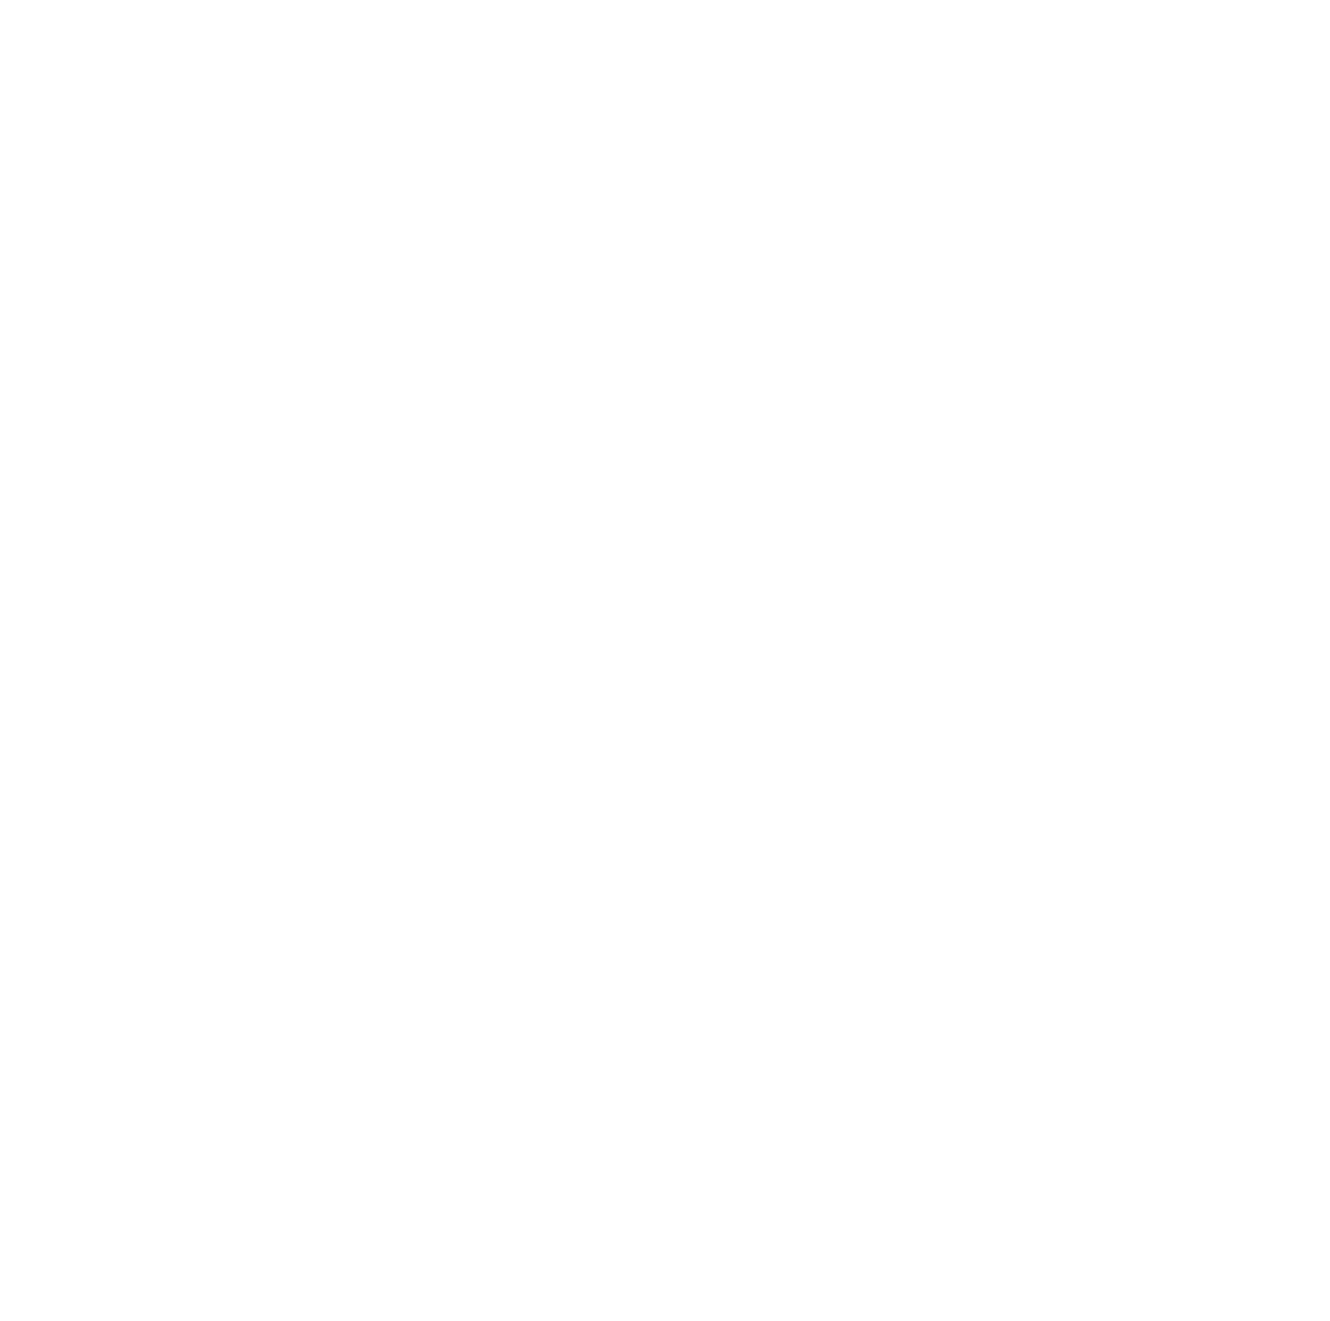 Aktion Club